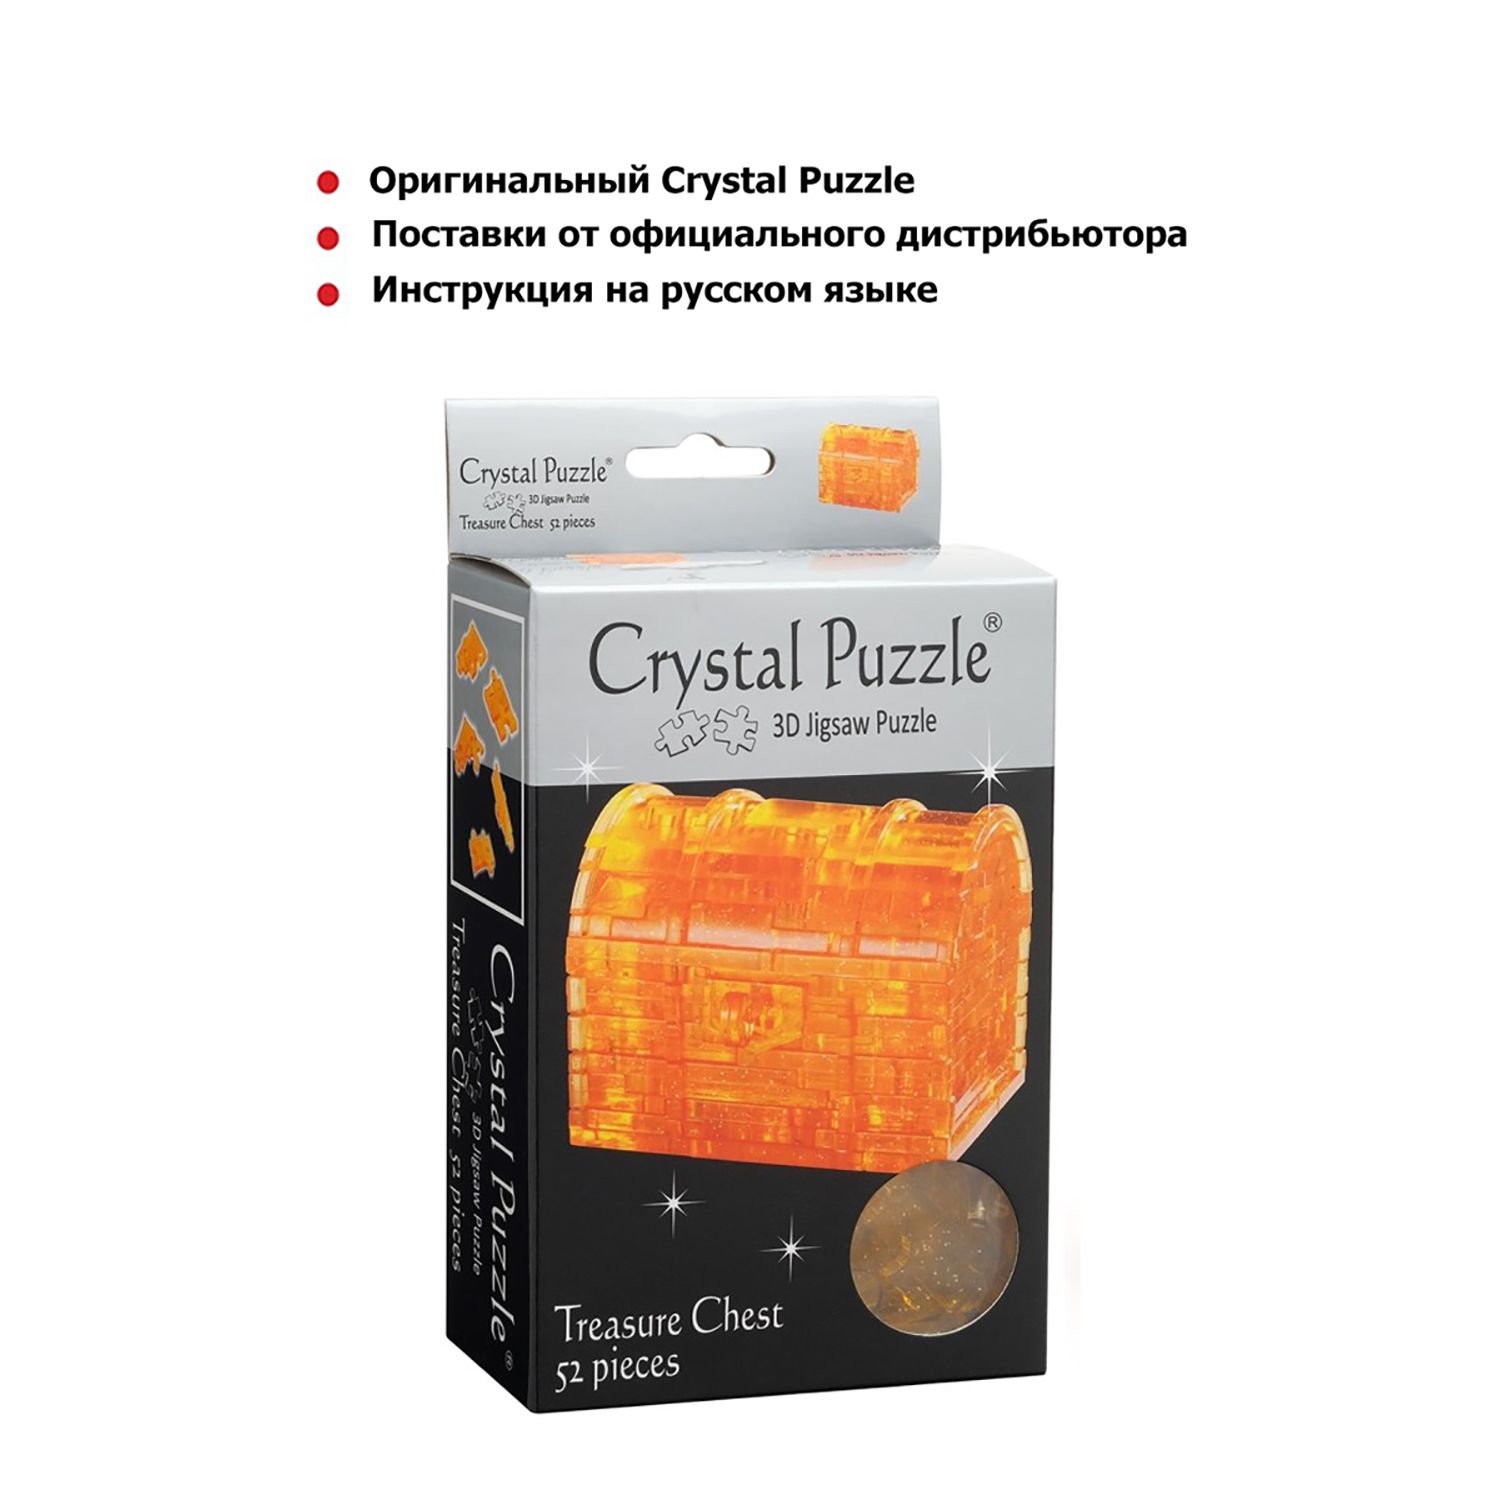 3D-пазл Crystal Puzzle IQ игра для детей кристальный Сундук 52 детали - фото 3